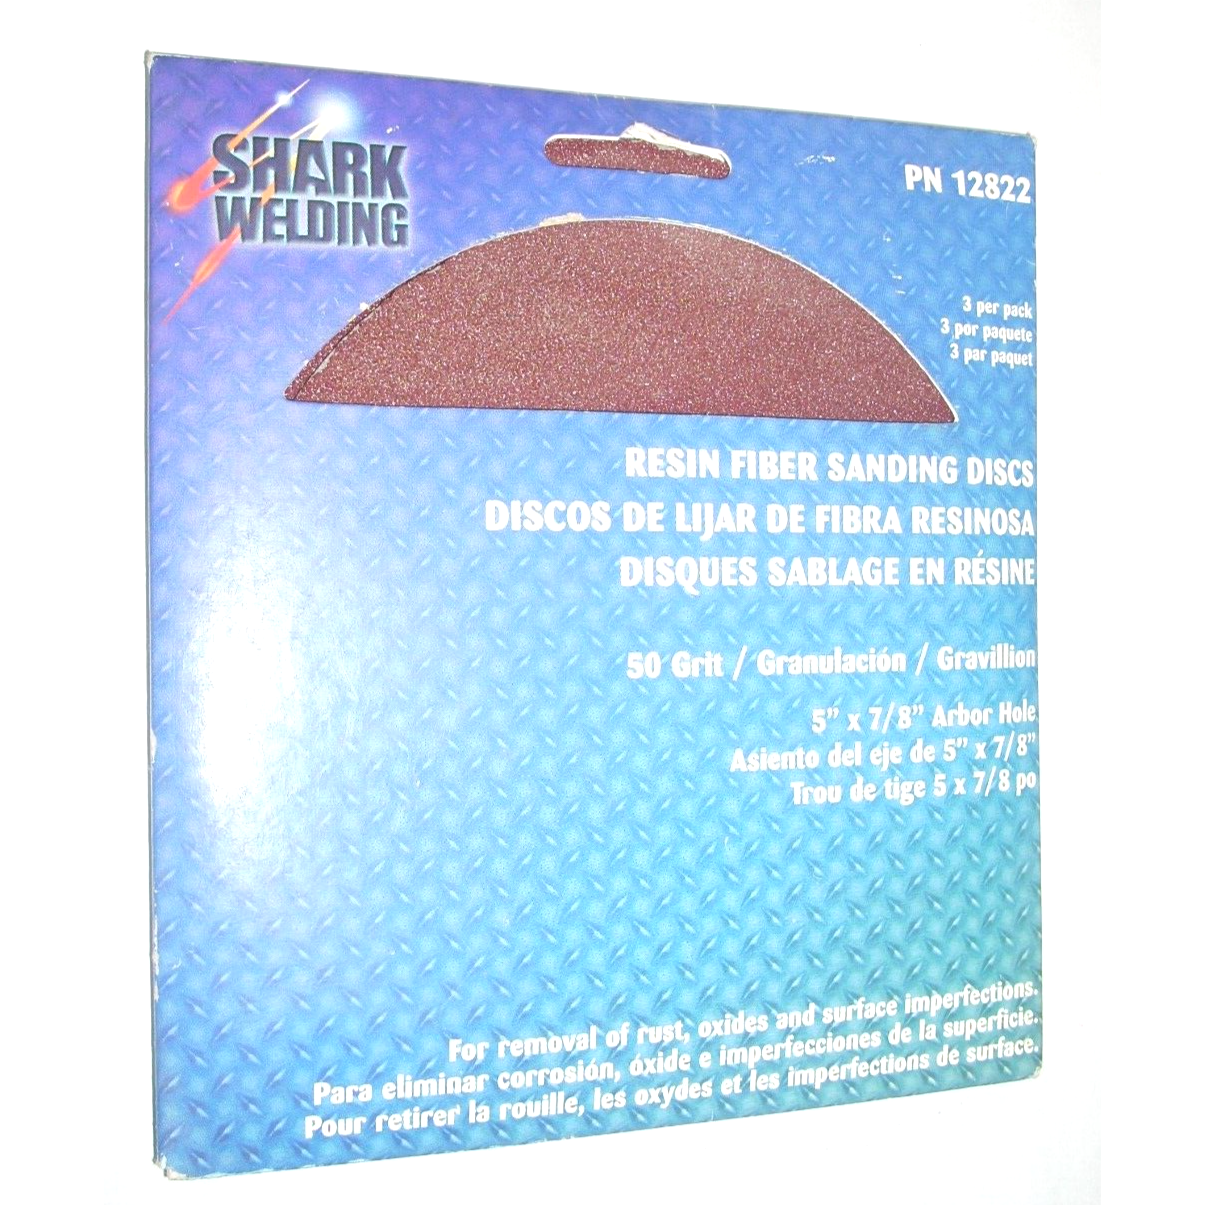 Shark 12822 Resin Fiber Sanding Discs 5 x 7/8 80 Grit for Metal 3pk